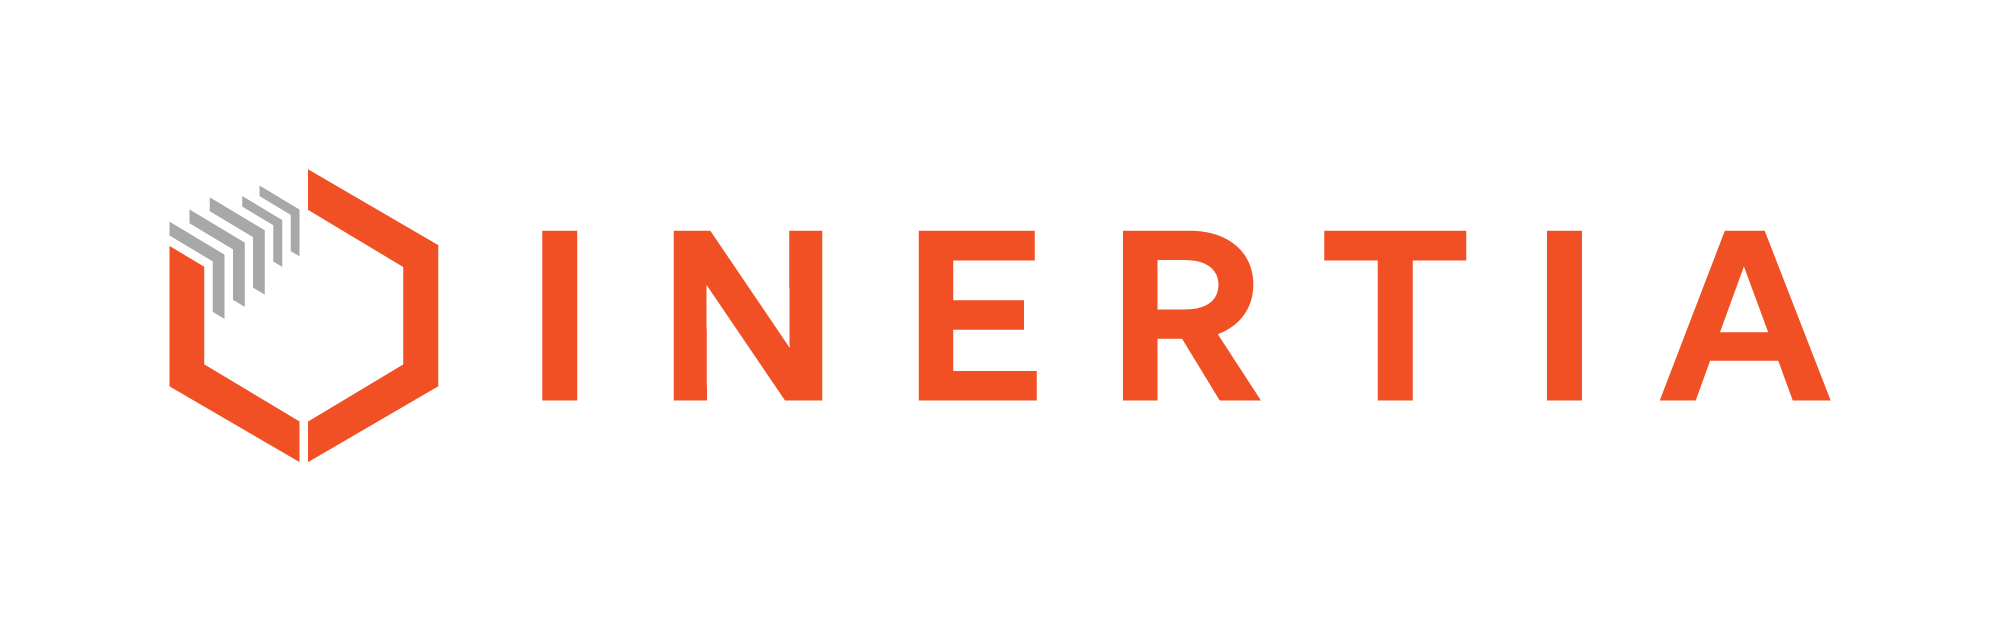 logo-horizontal-combo-primary-orange-concrete